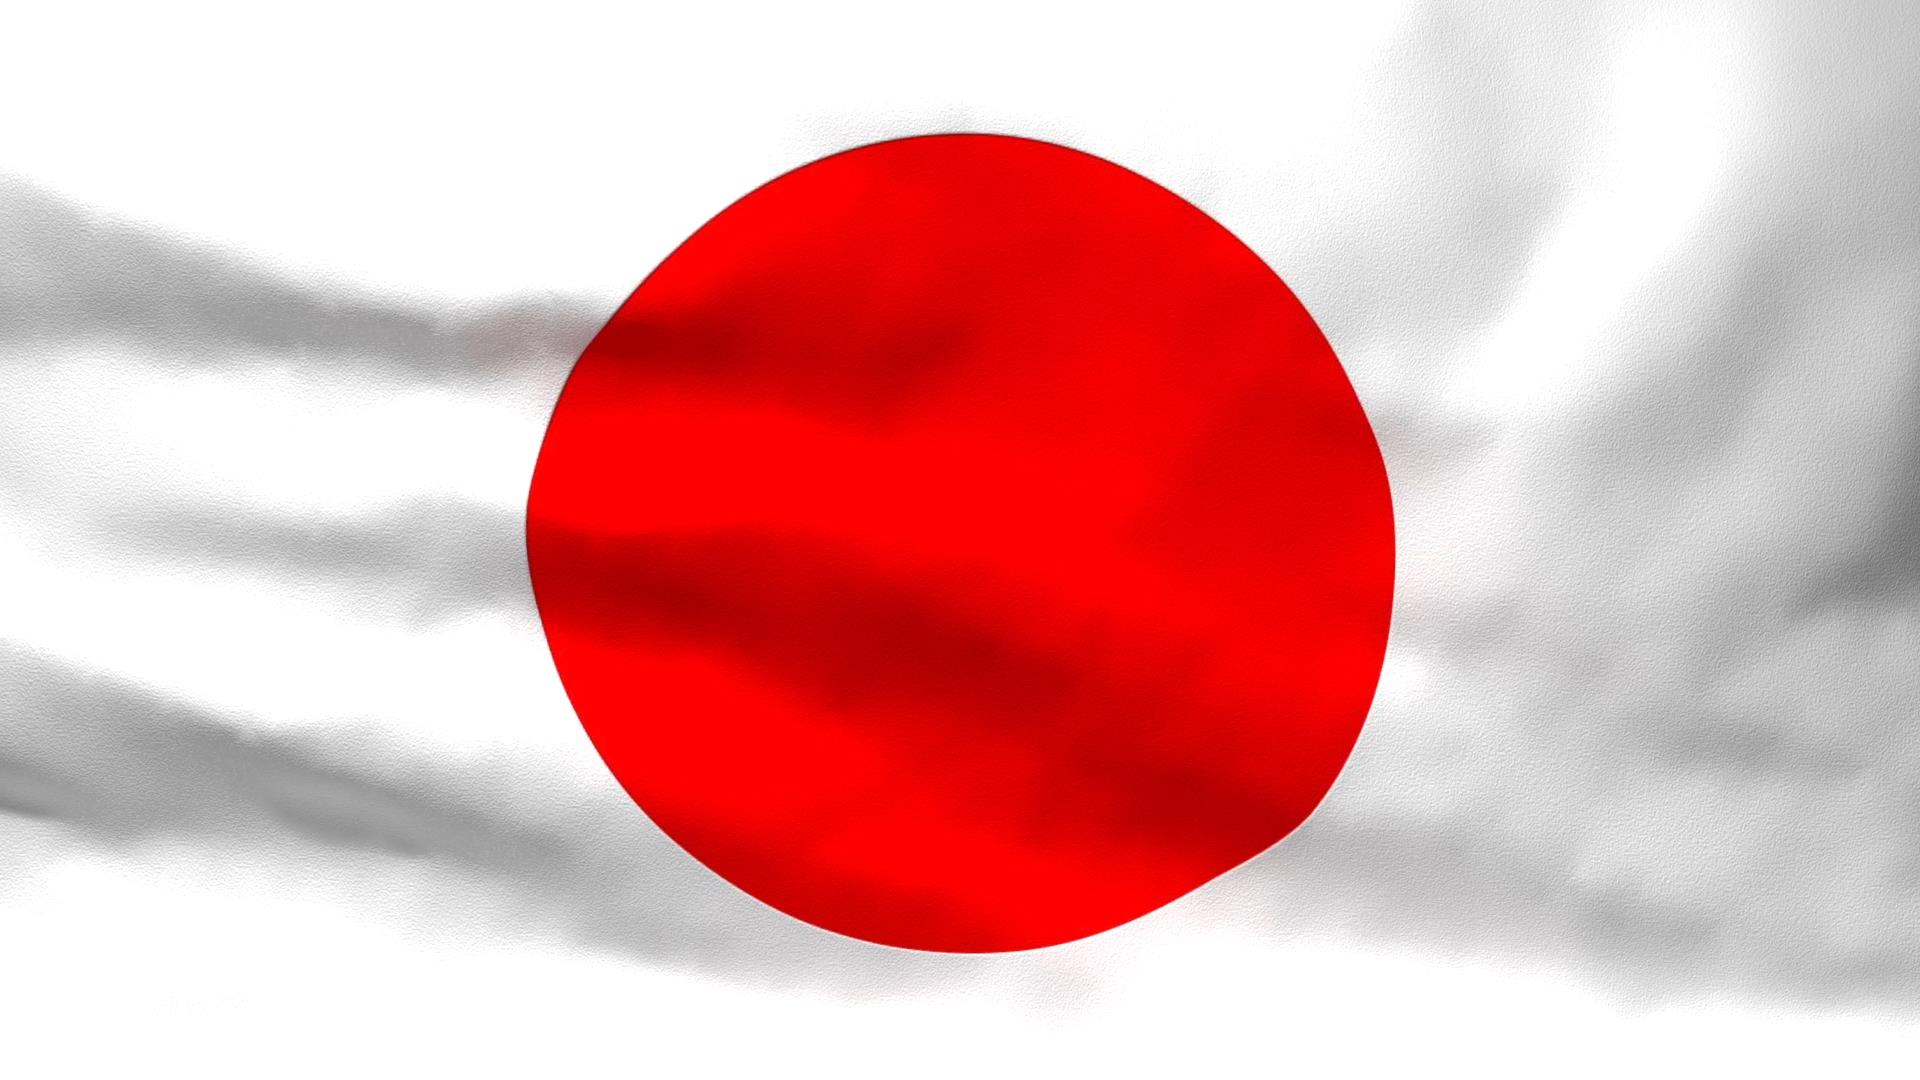 Quốc kỳ Nhật Bản là biểu tượng của sự kiên định và sự phát triển vượt bậc của đất nước. Cùng xem qua những bức ảnh đẹp về quốc kỳ Nhật Bản tại năm 2024 để hiểu rõ hơn về giá trị văn hóa và tinh thần của con người Nhật. Lá cờ đỏ trên nền trắng đầy ý nghĩa chắc chắn sẽ khiến bạn cảm thấy tự hào và trân trọng nền văn hóa đặc sắc này.